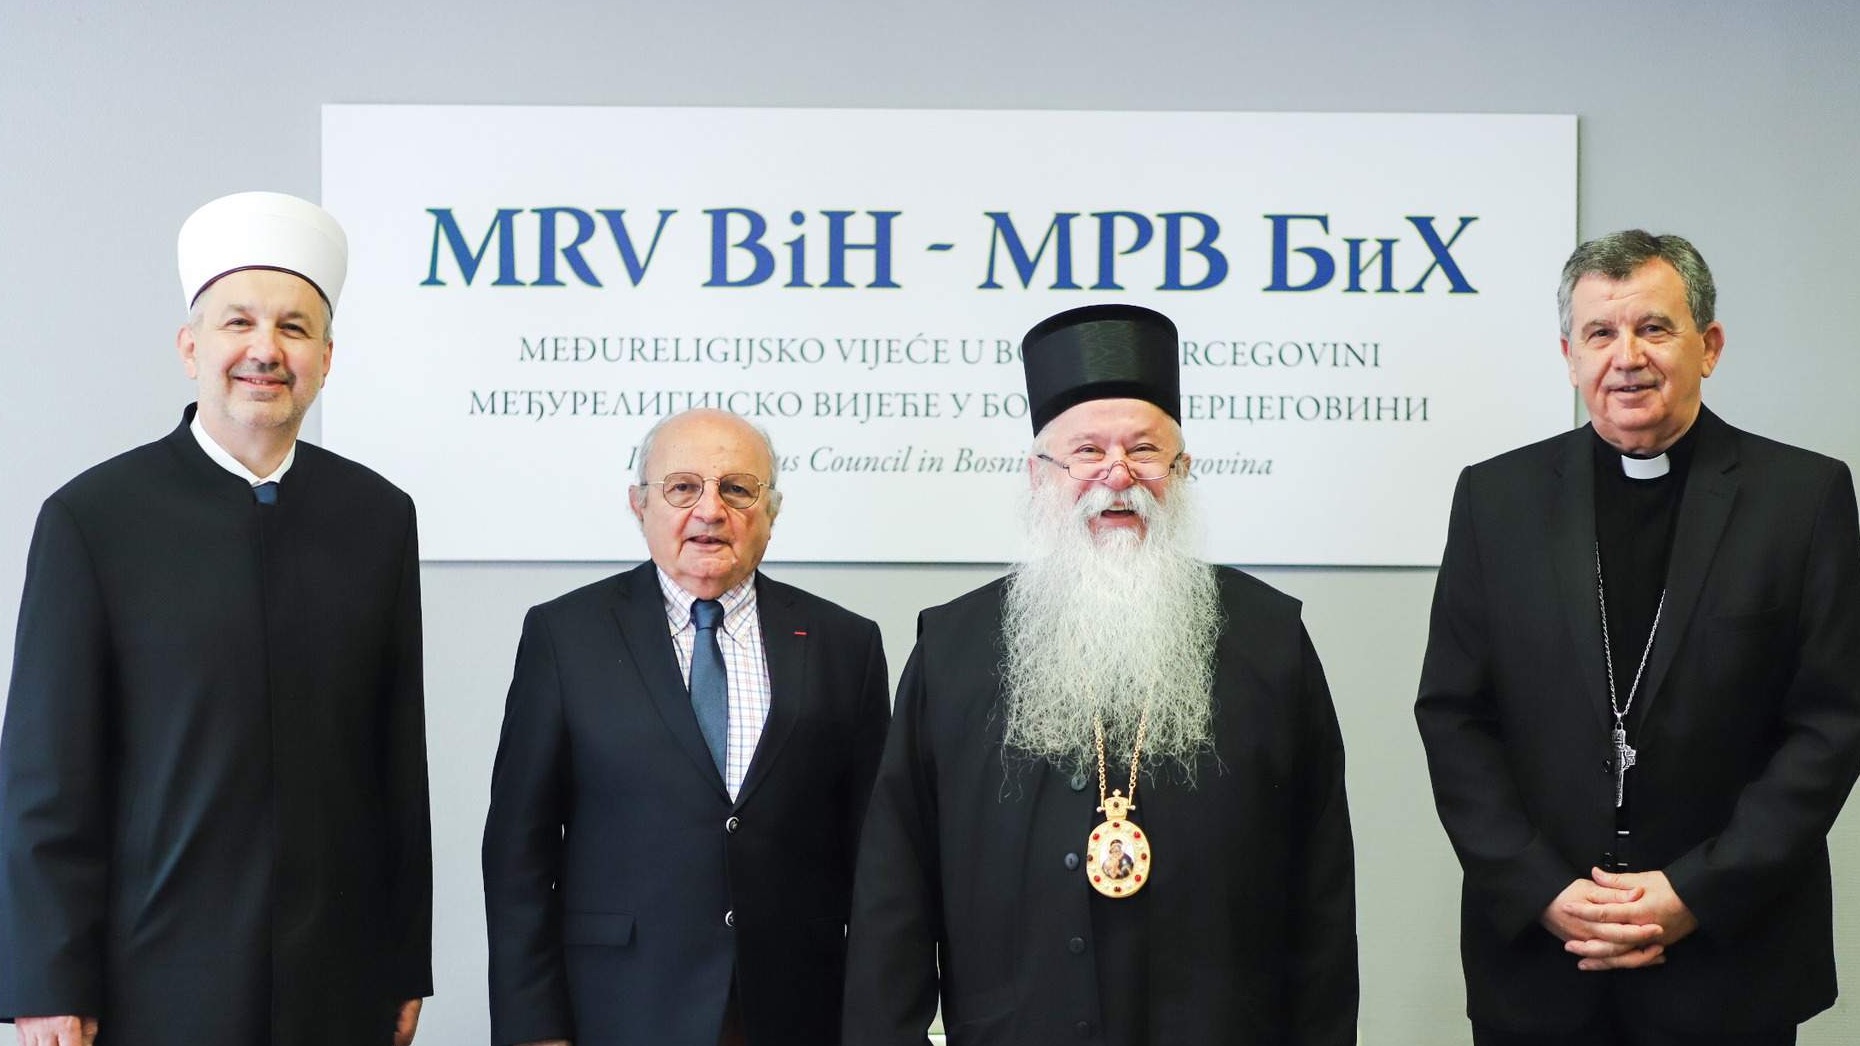 Muftija sarajevski prof. dr. Nedžad Grabus novi predsjedavajući Međureligijskog vijeća